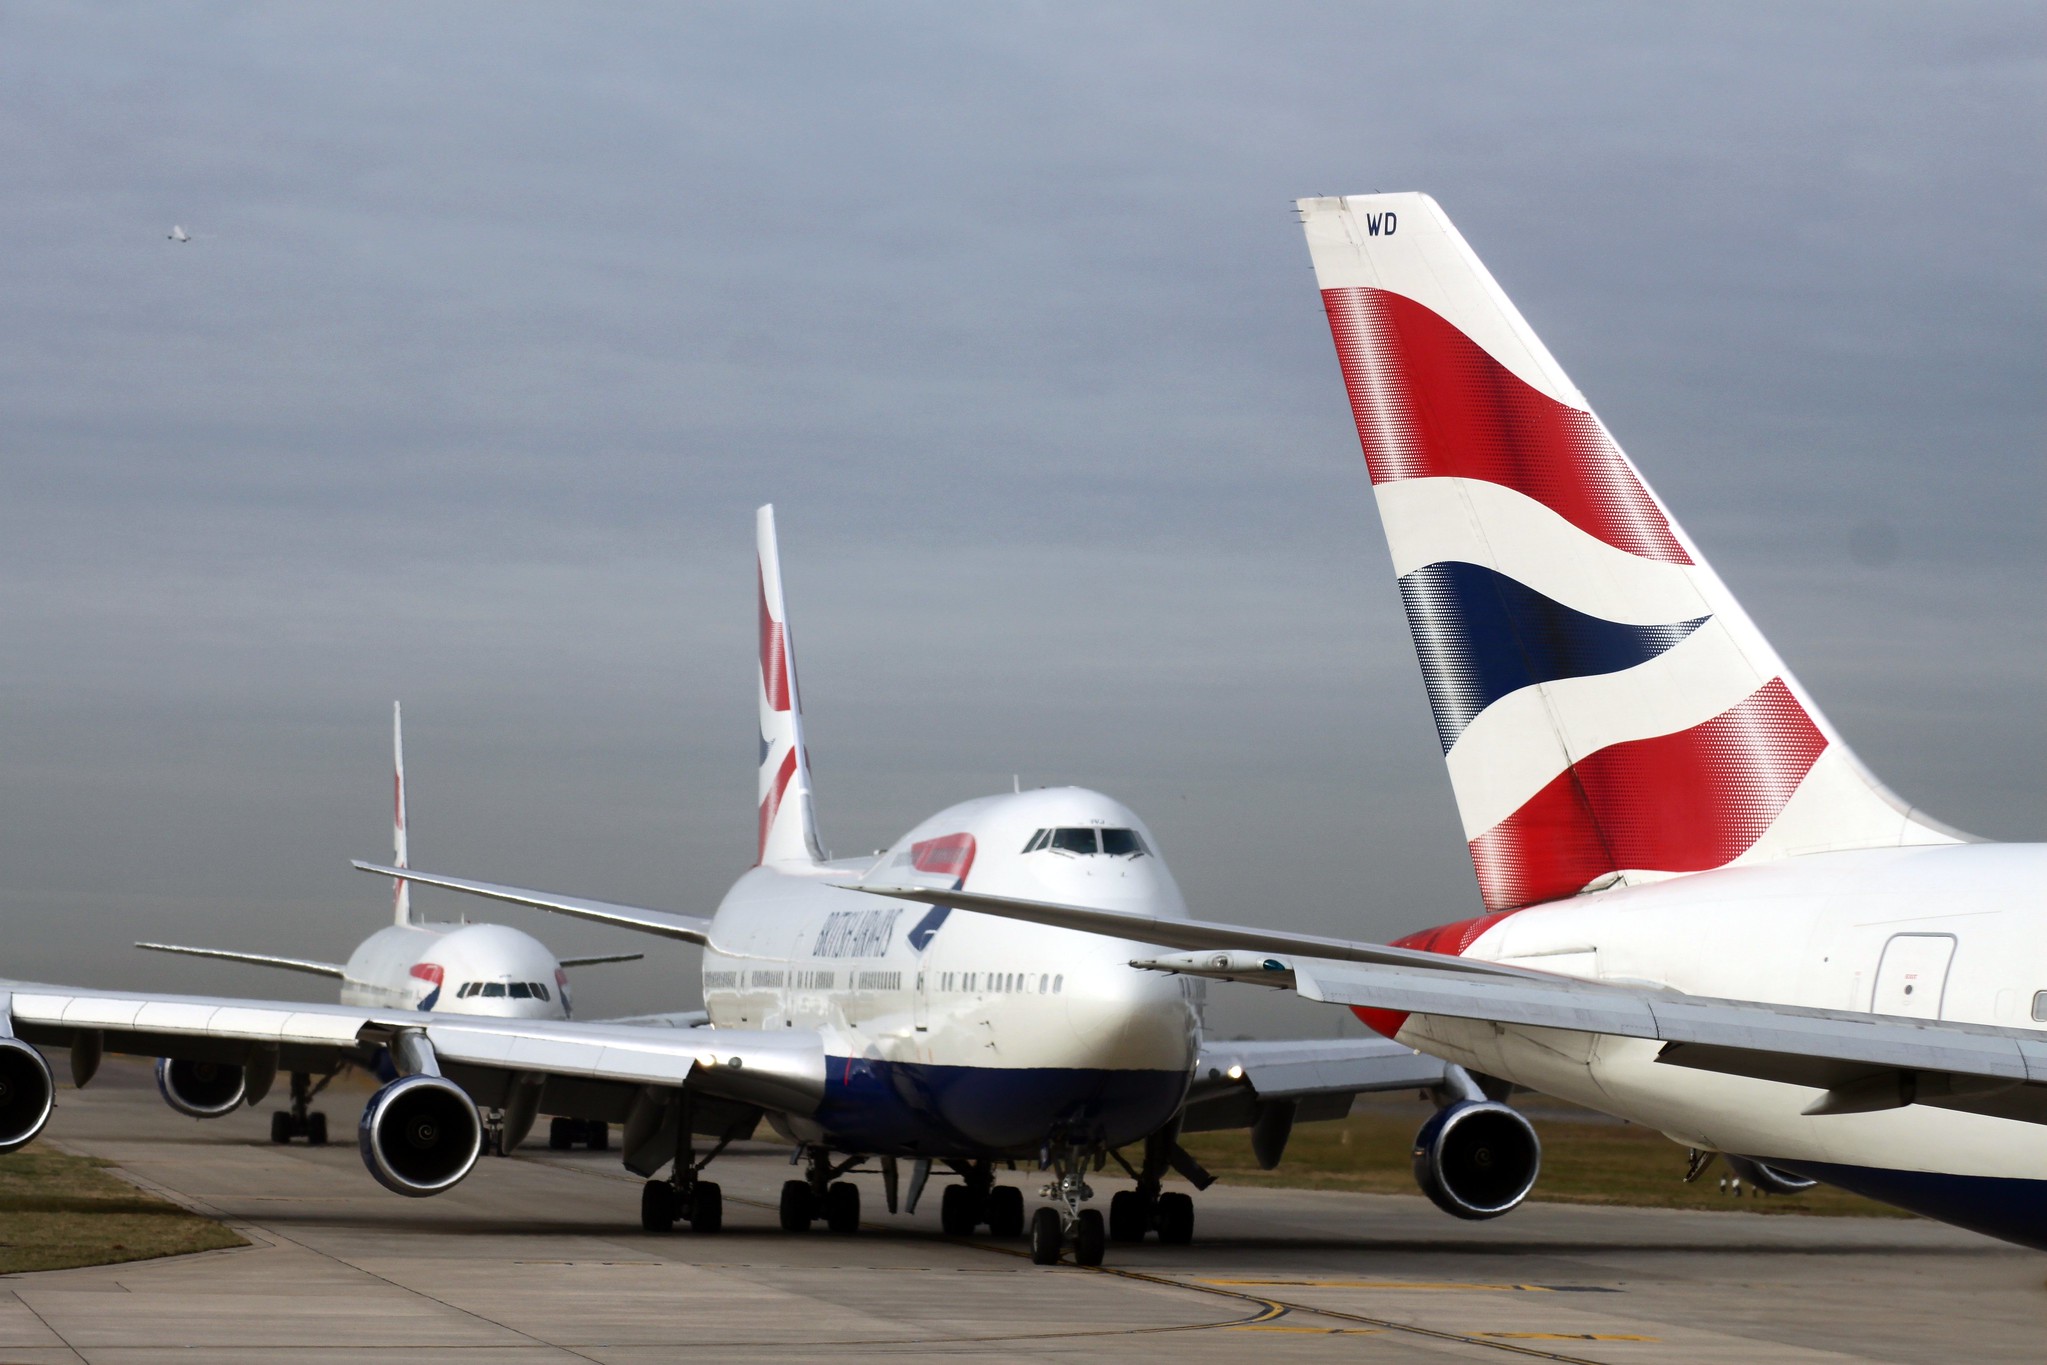 British Airways flights at Heathrow Airport